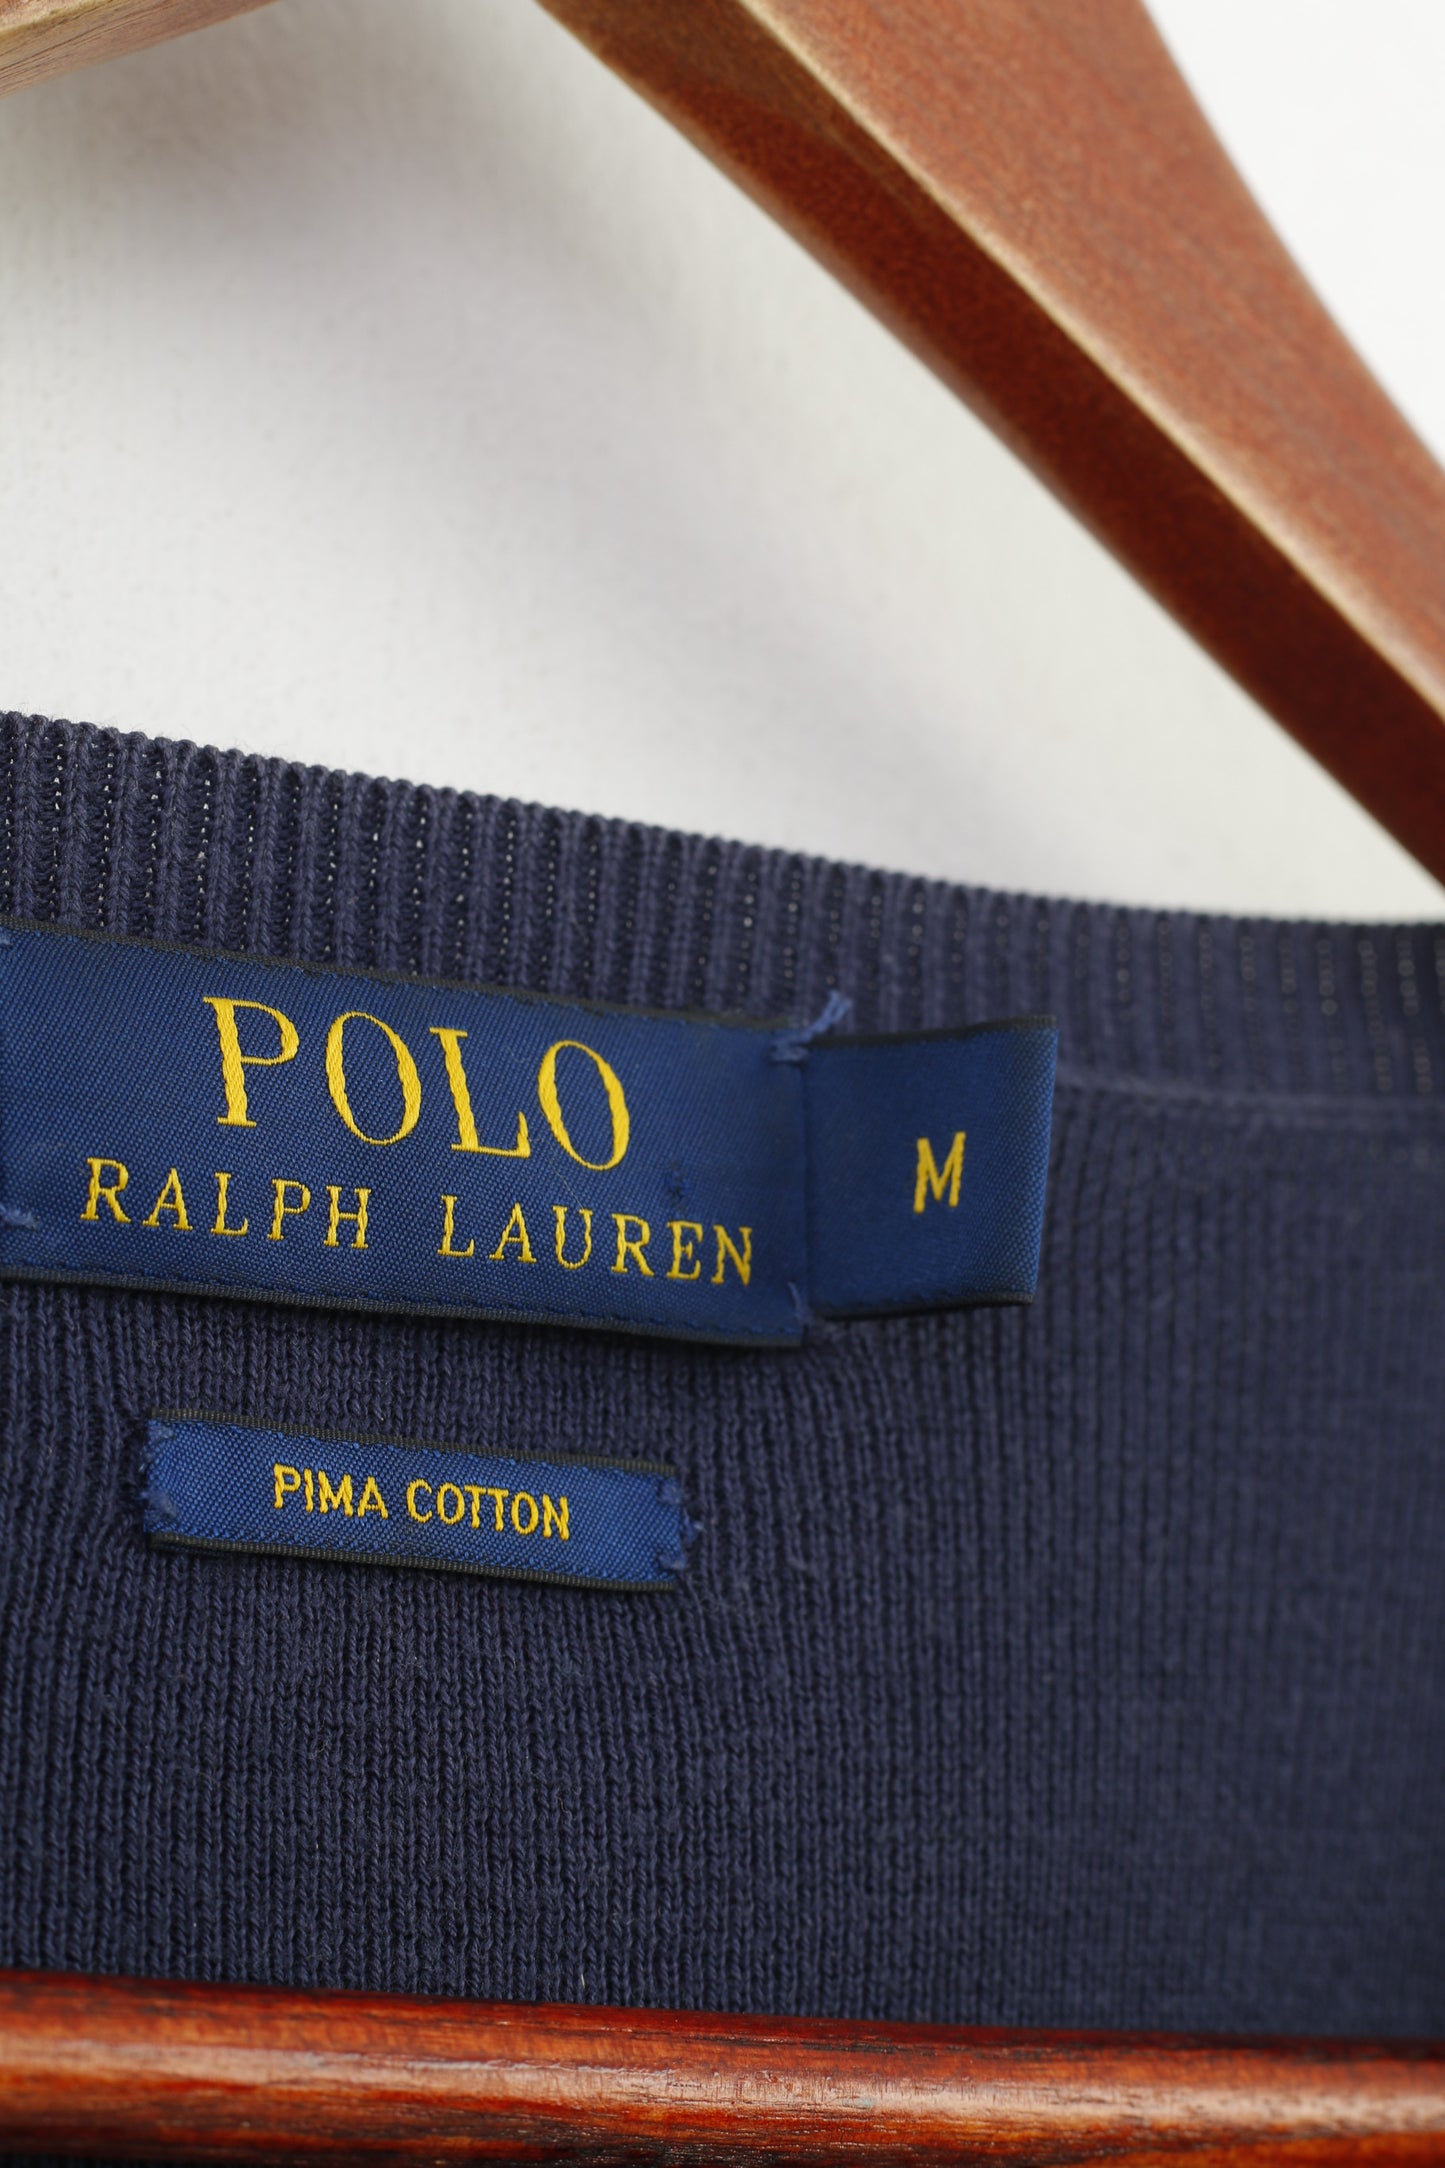 Polo Ralph Lauren Uomo M Maglione con scollo a V Prima Cotton Navy Classico Top